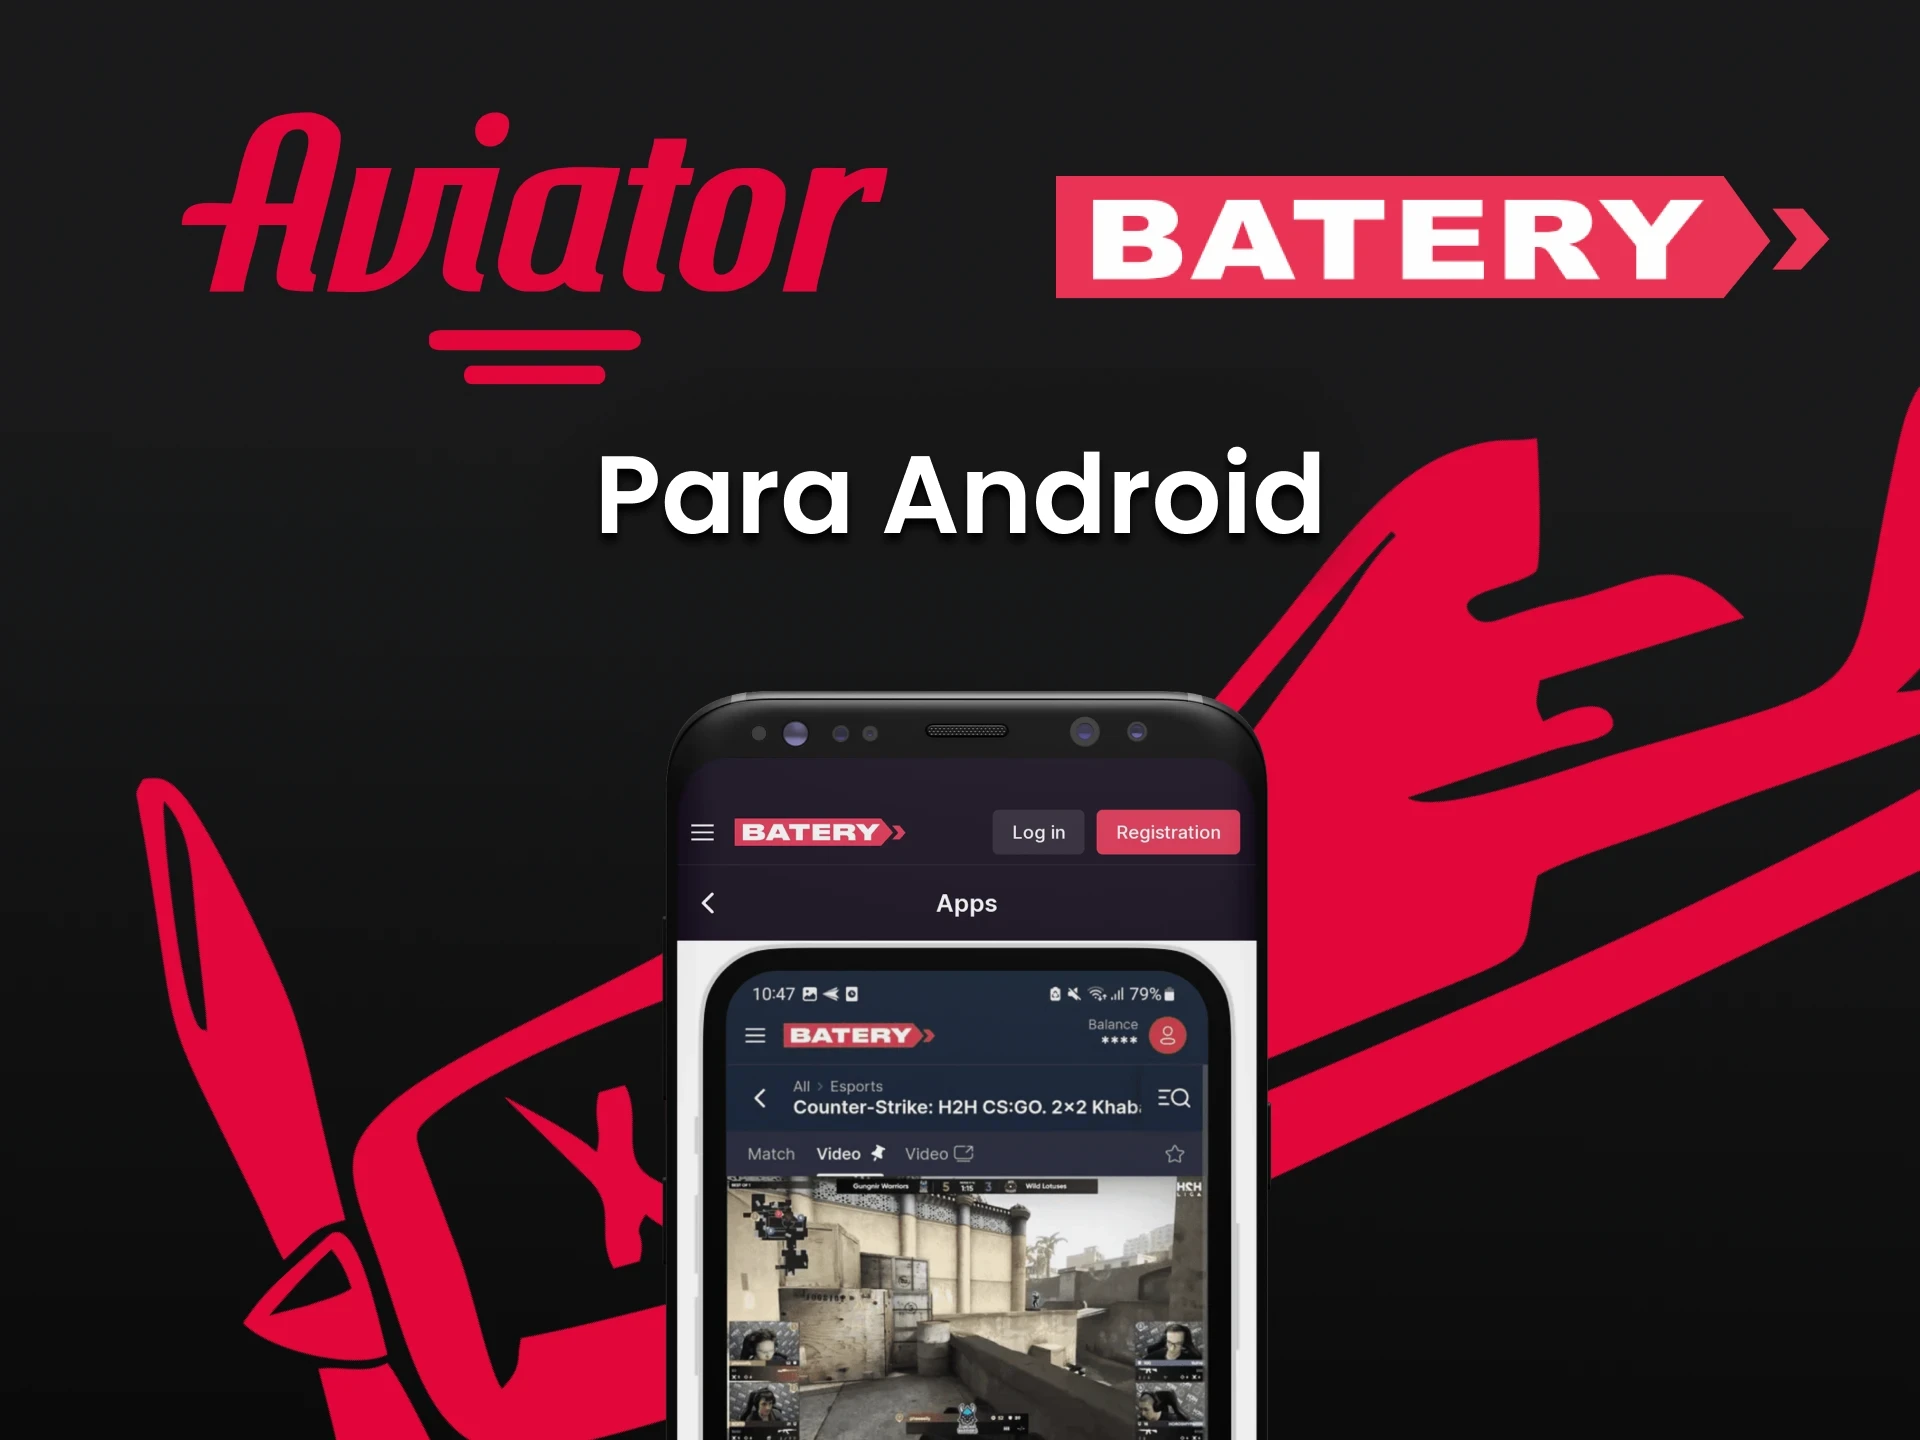 Baixe o aplicativo Batery no Android para jogar Aviator no Batery.